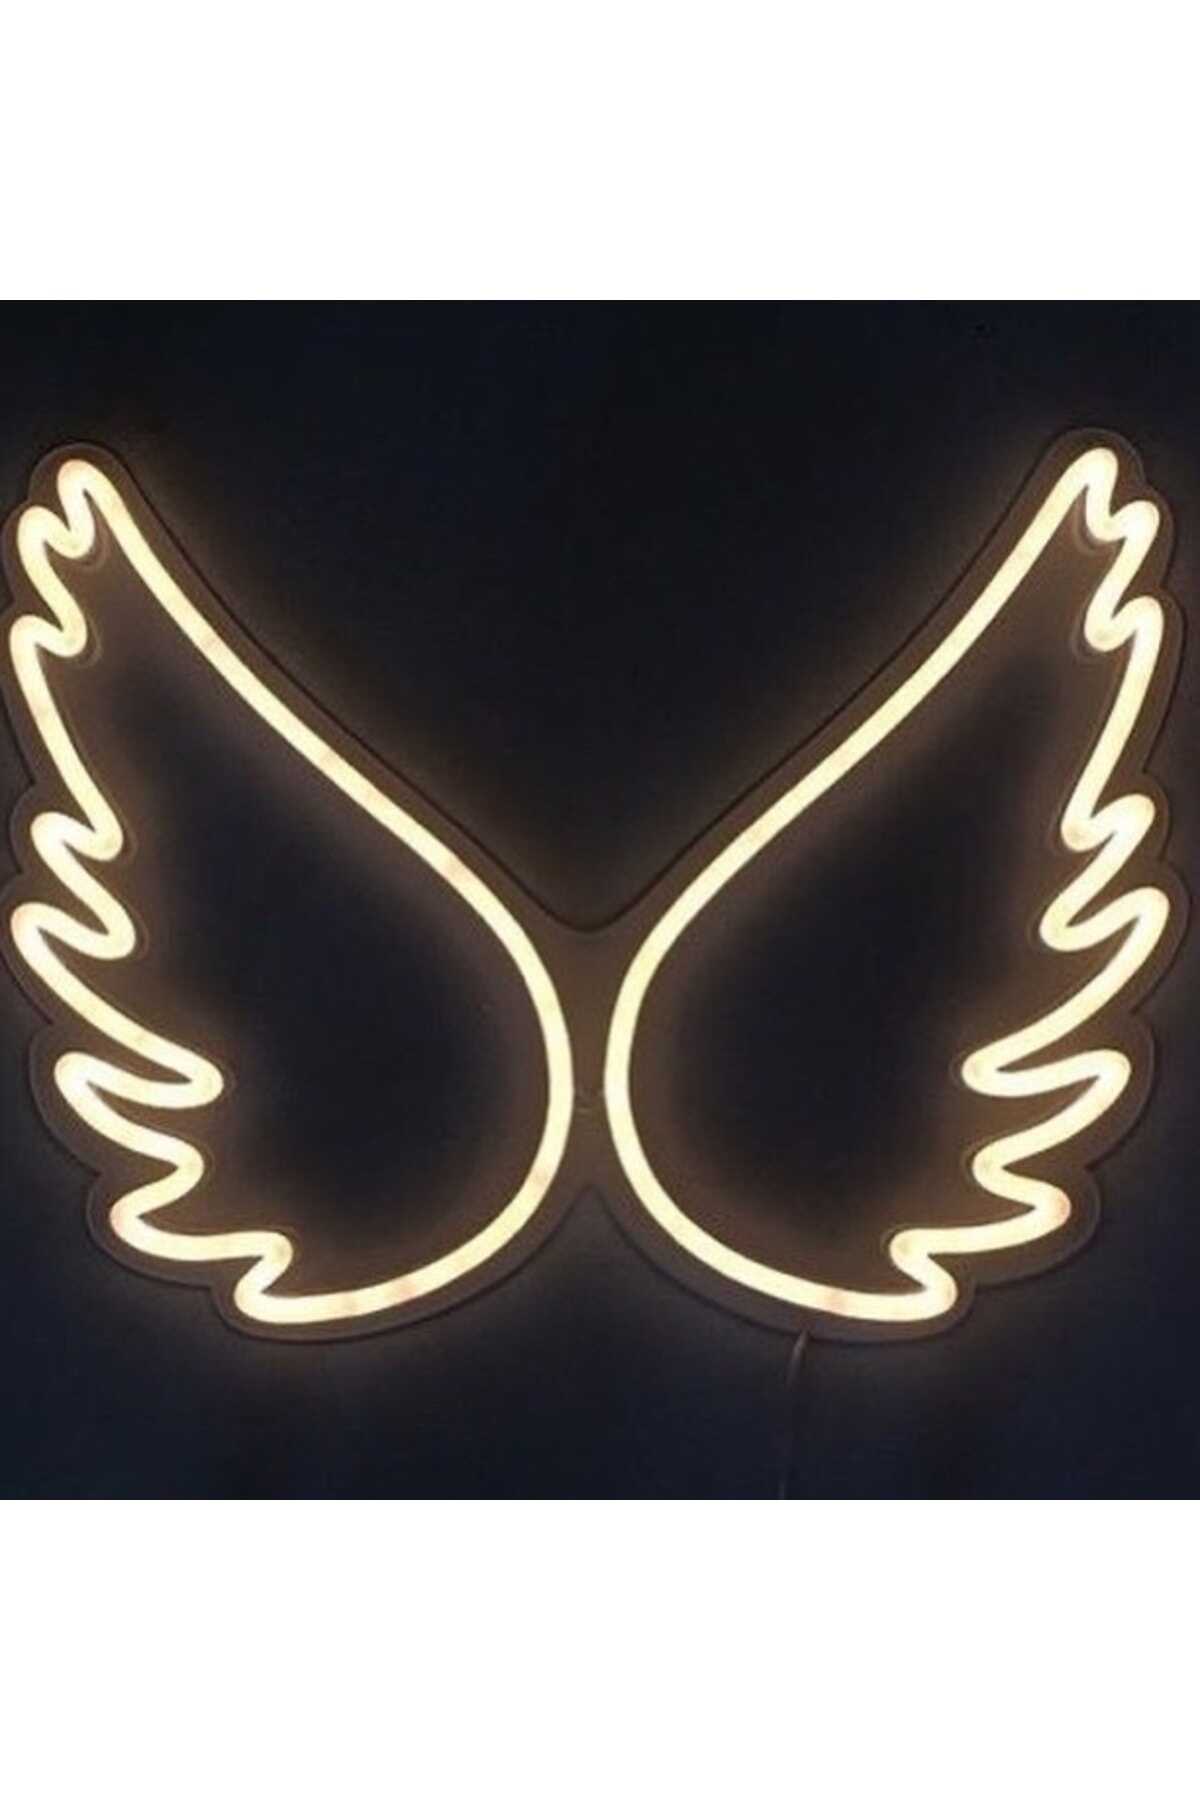 لامپ تزئینی  LED طرح بال فرشته چند رنگ